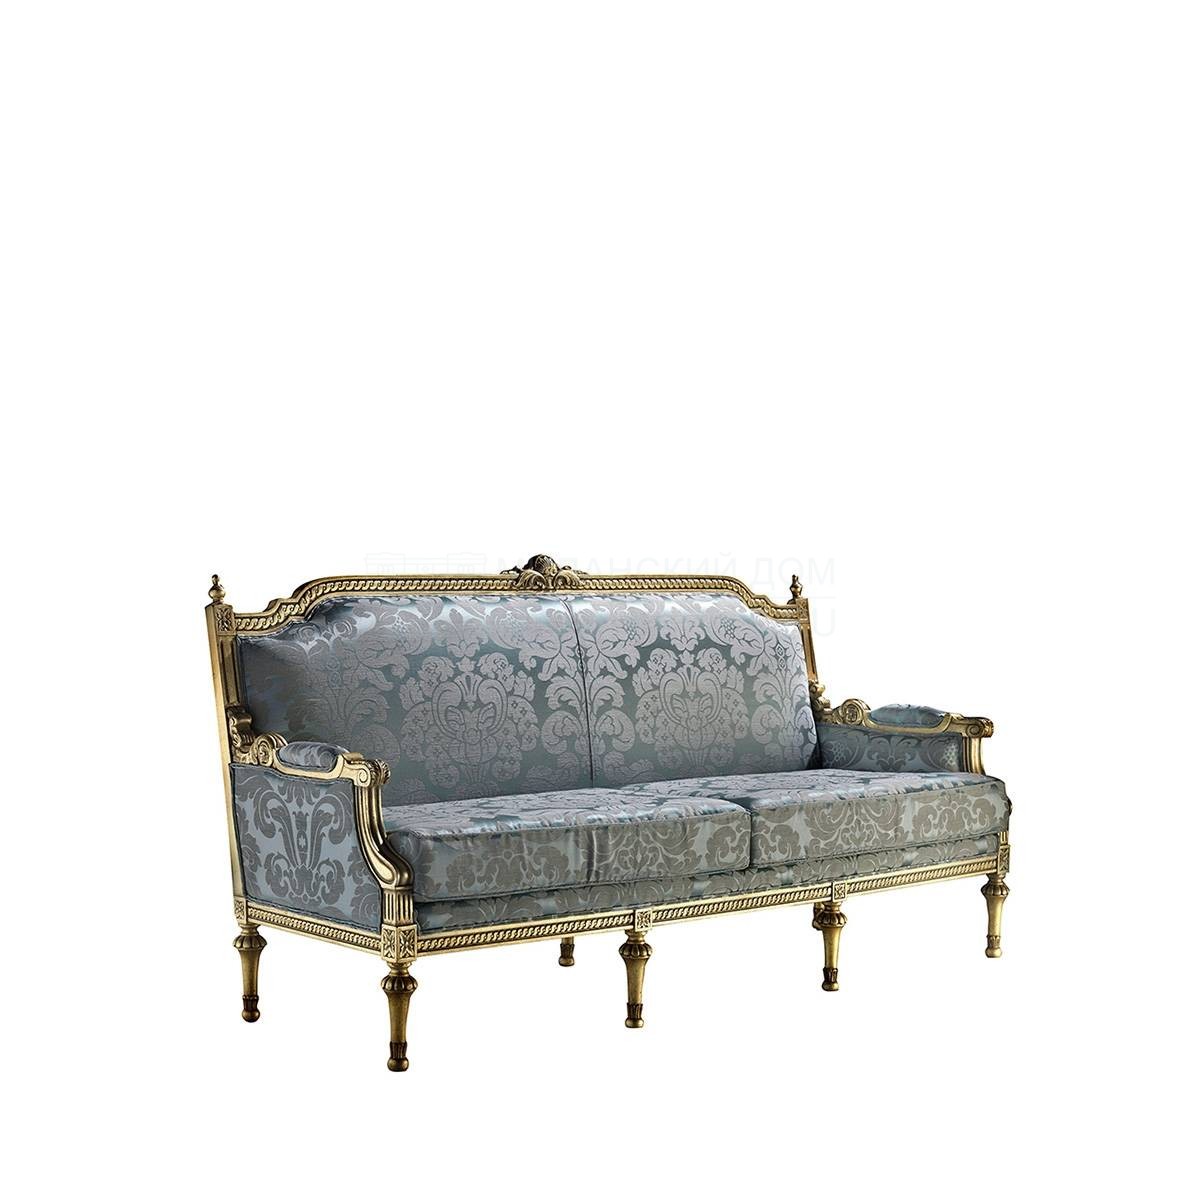 Прямой диван Versalles/S1400 из Испании фабрики COLECCION ALEXANDRA